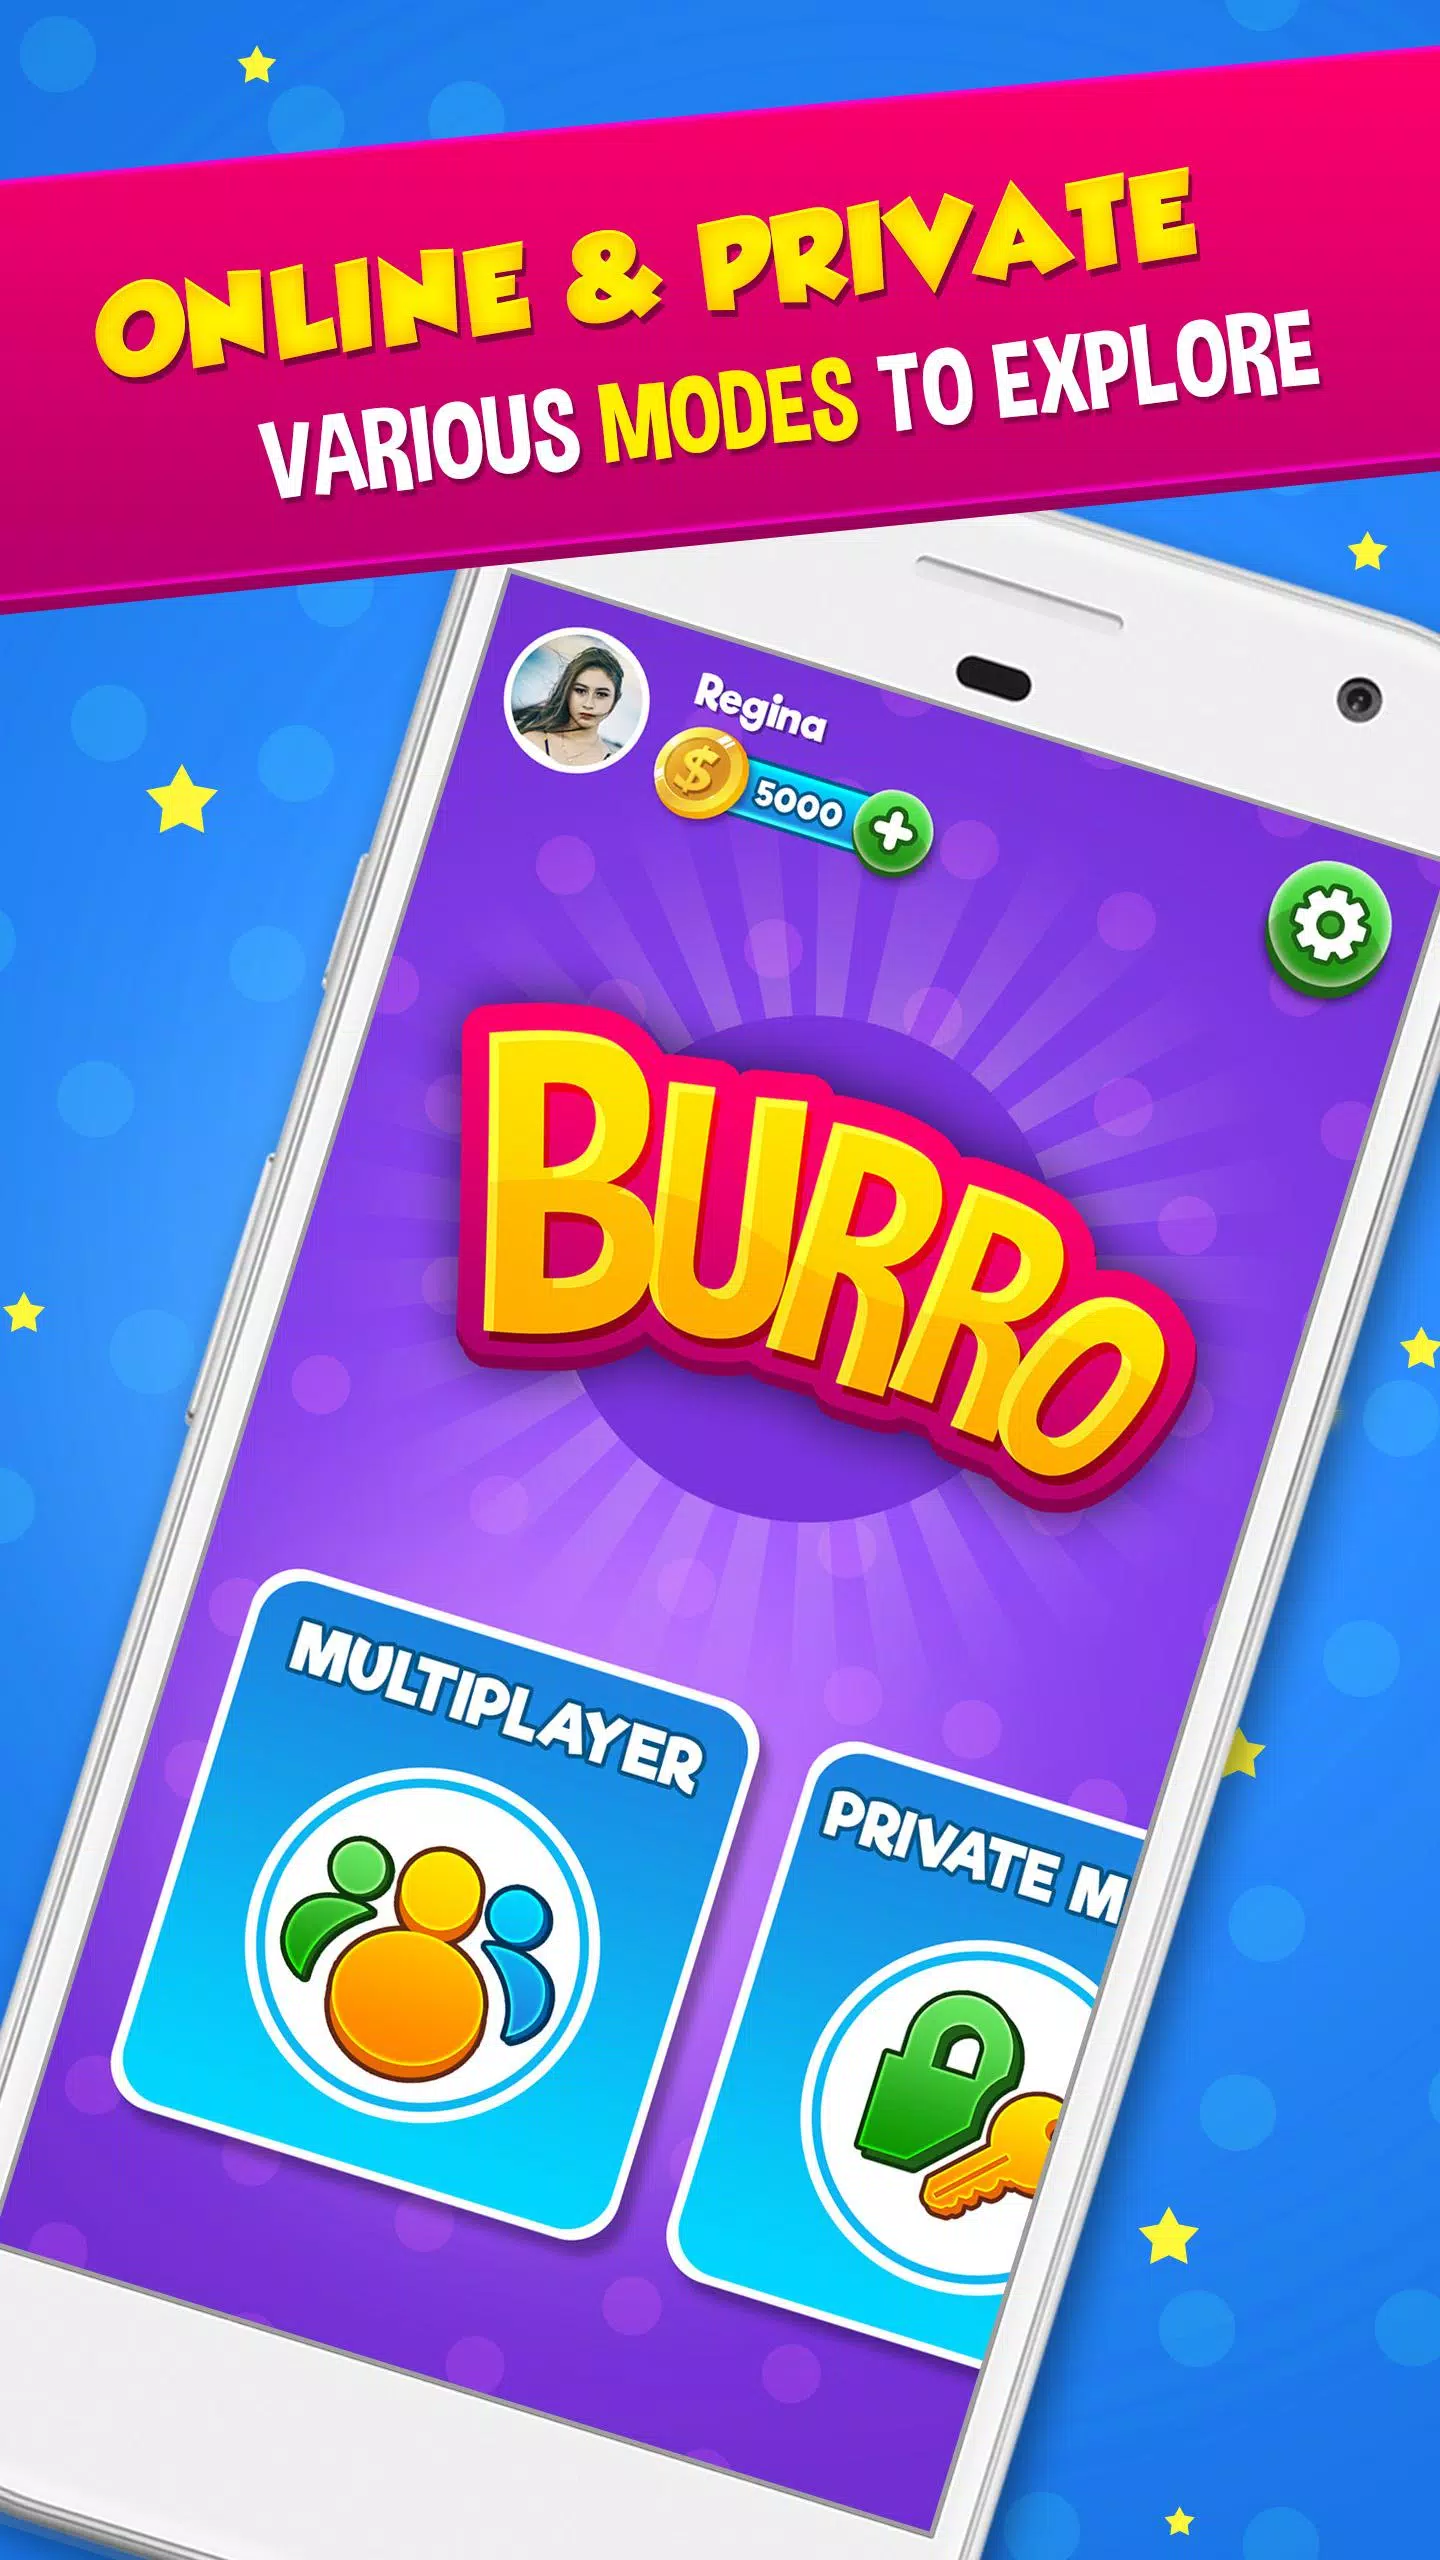 Download do APK de Burro Castigado ZingPlay: Jueg para Android